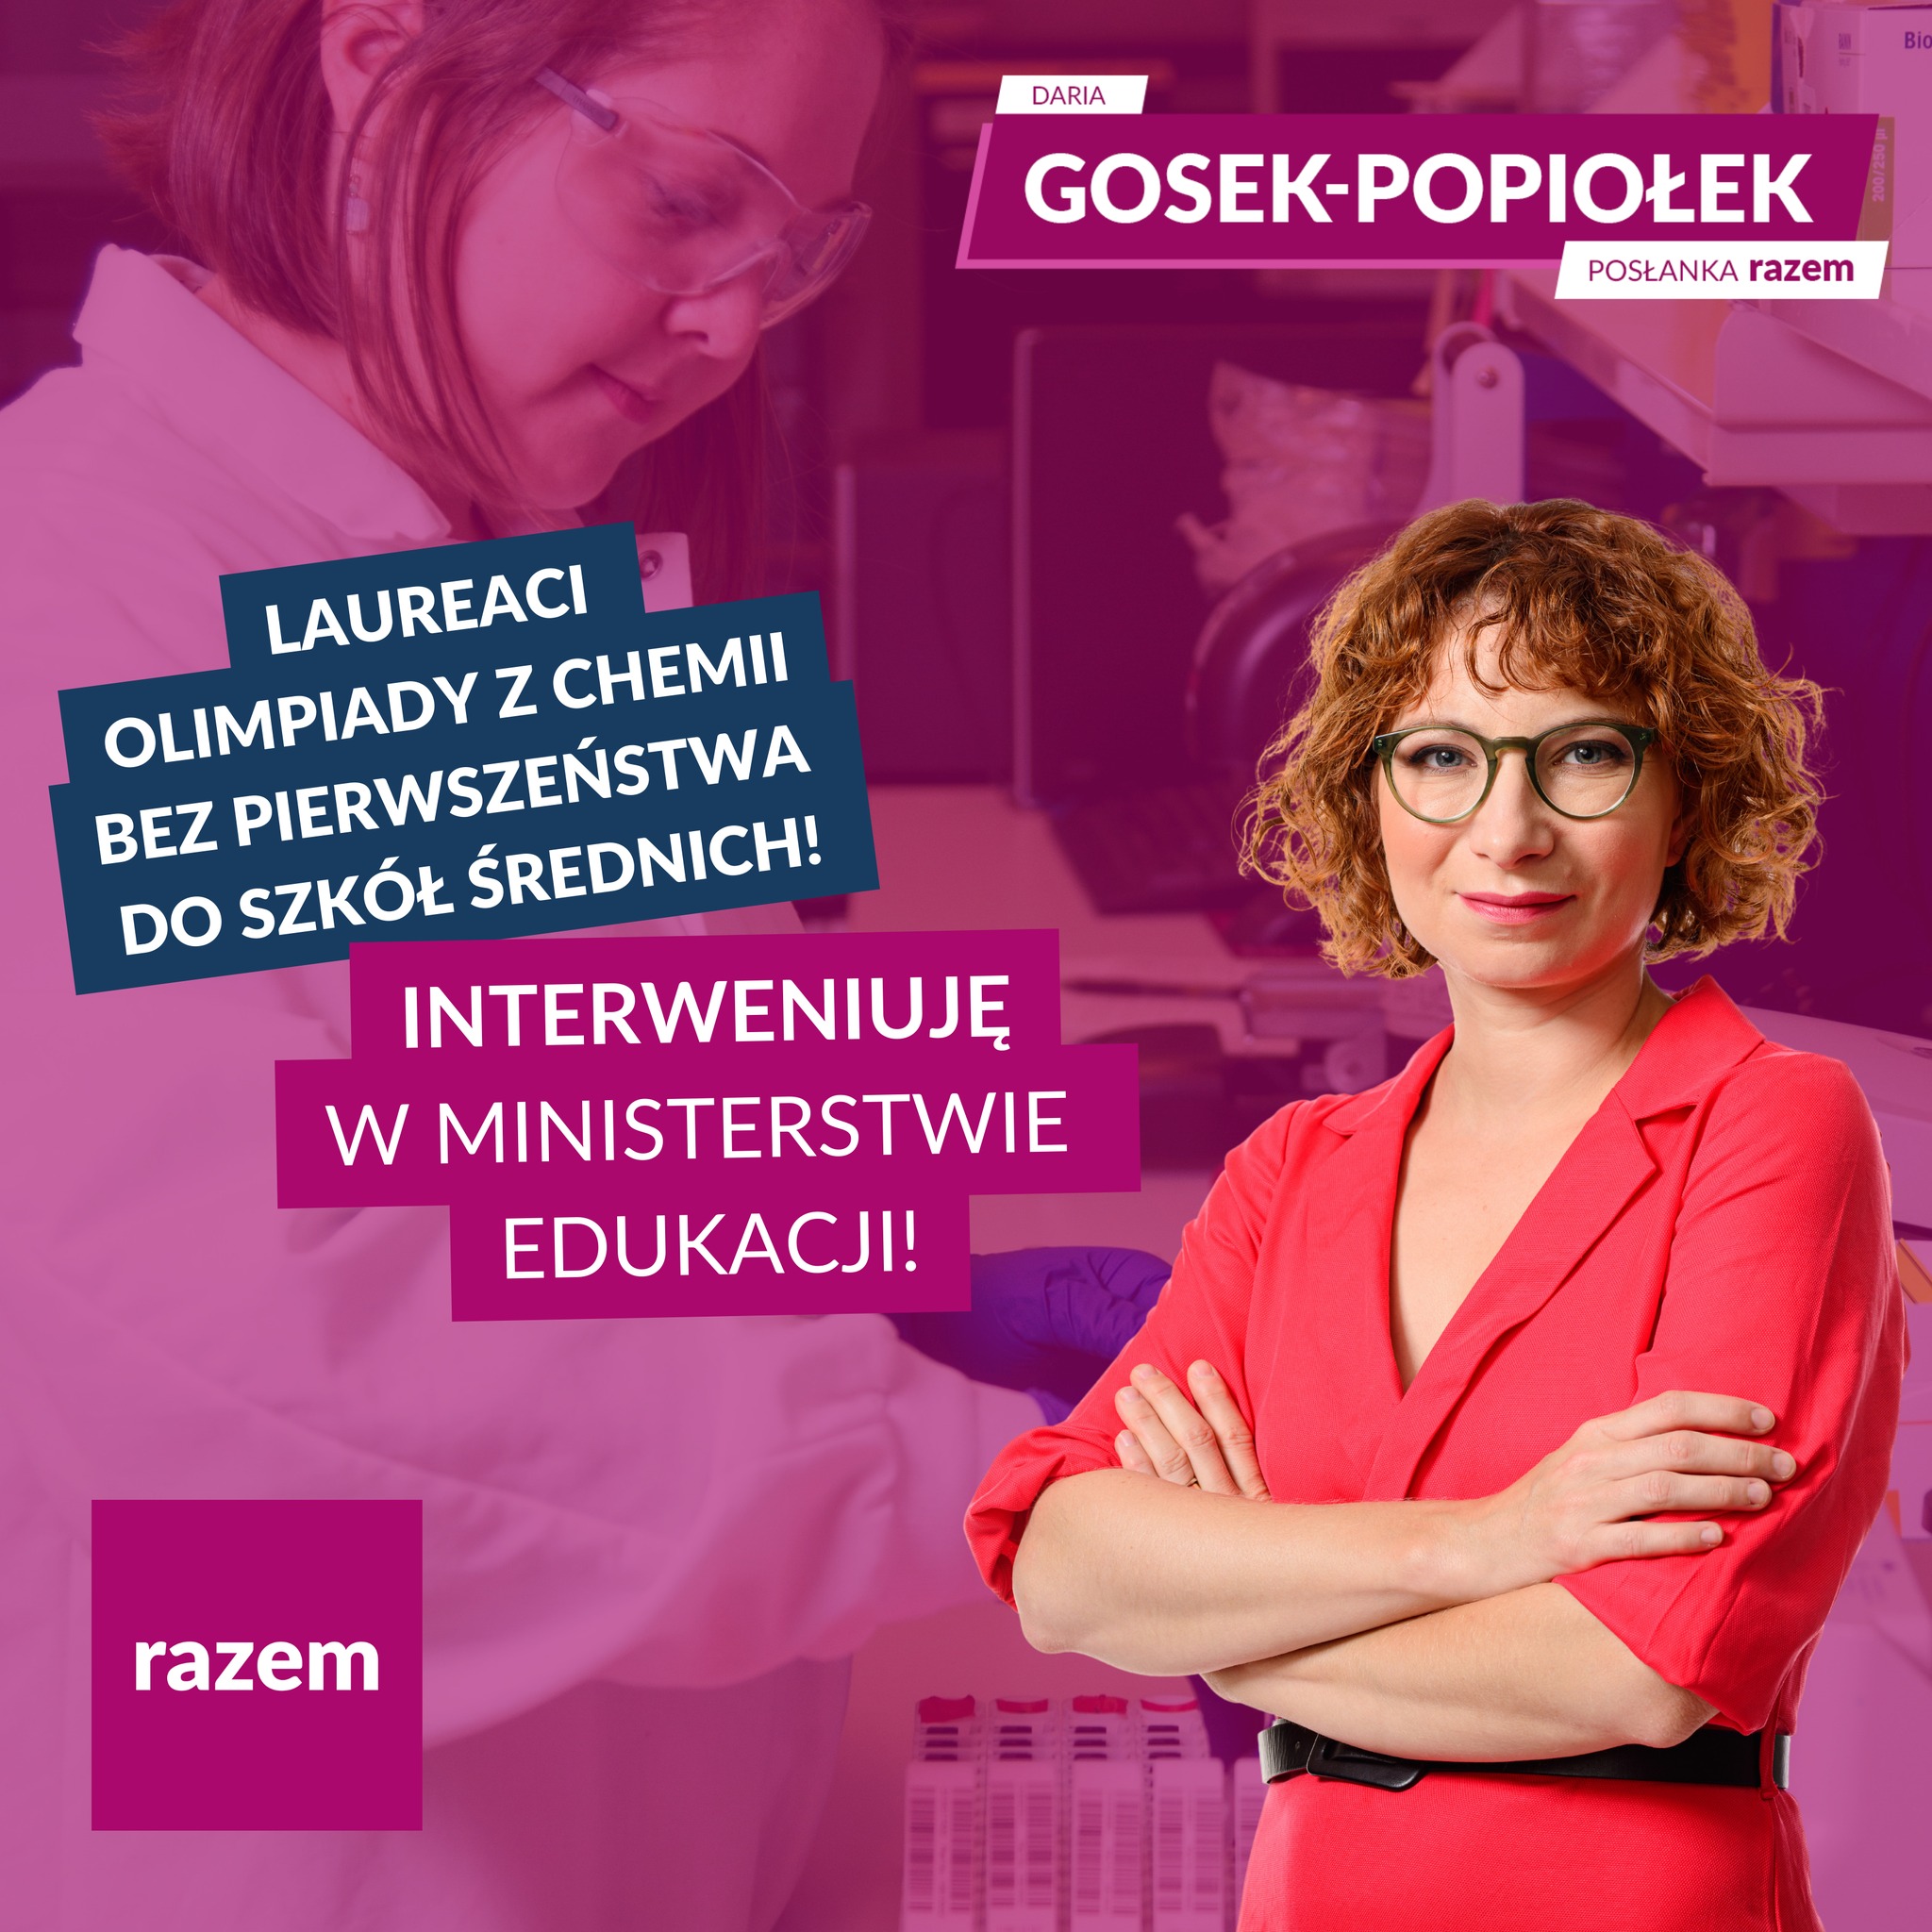 Daria Gosek-Popiołek interweniuje ws. laureatów olimpiady z chemii